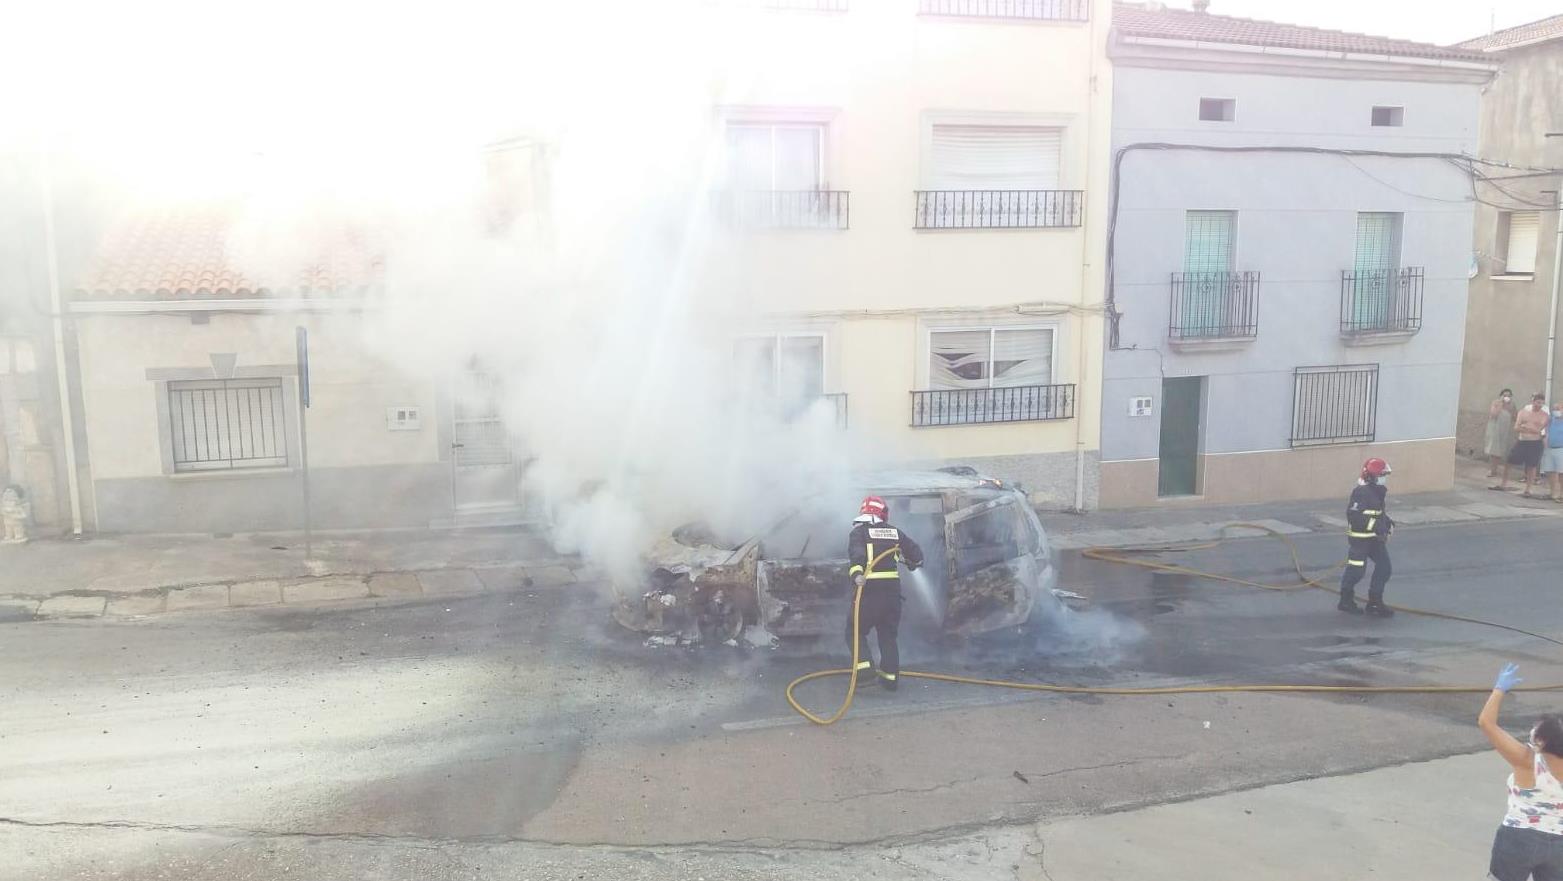 Foto 4 - Arde por completo un vehículo en pleno centro de El Bodón  